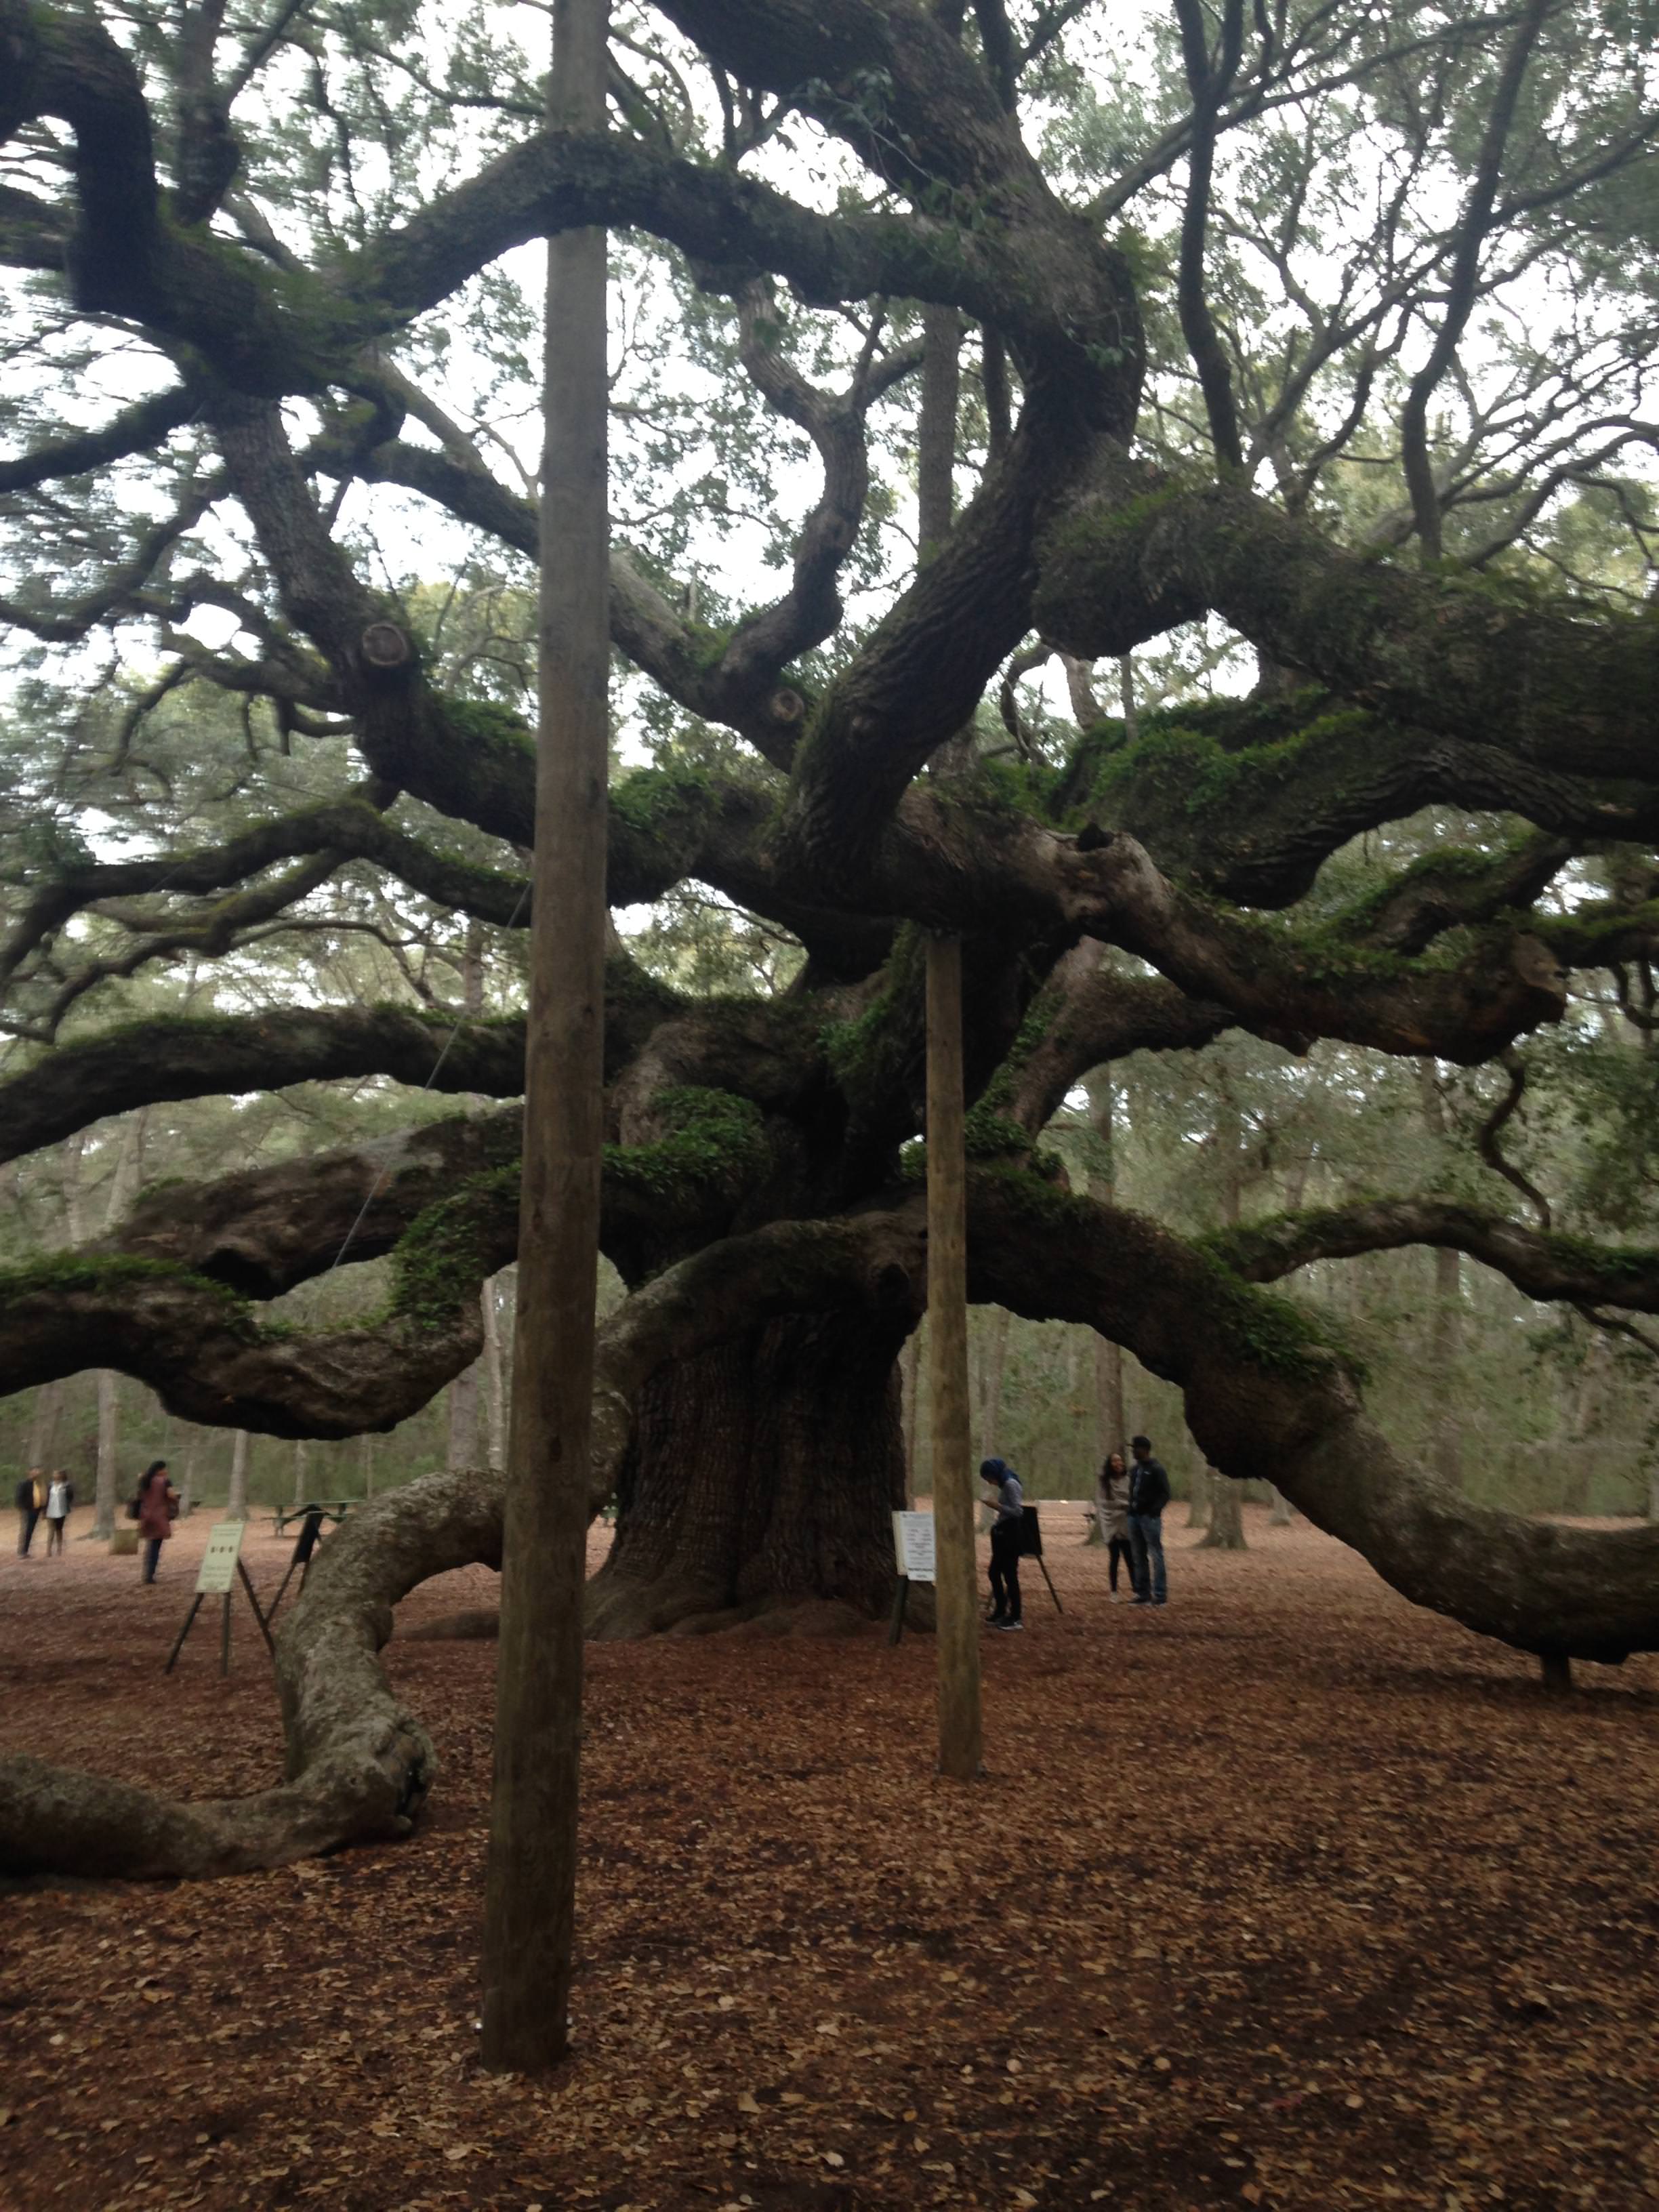 400 year old angel oak tree in south carolina